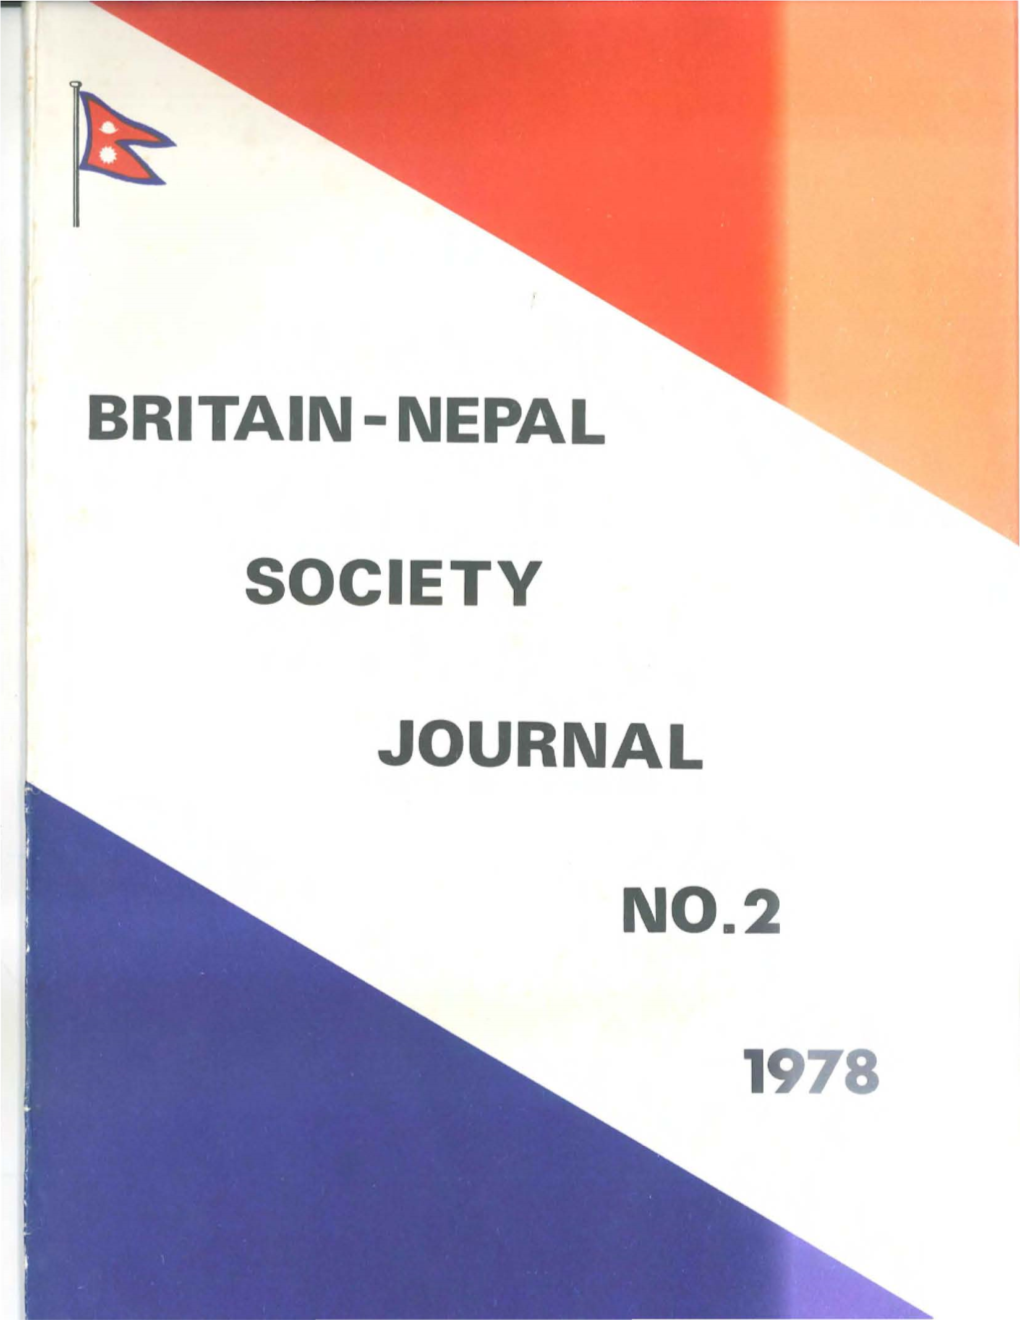 Britain - Nepal